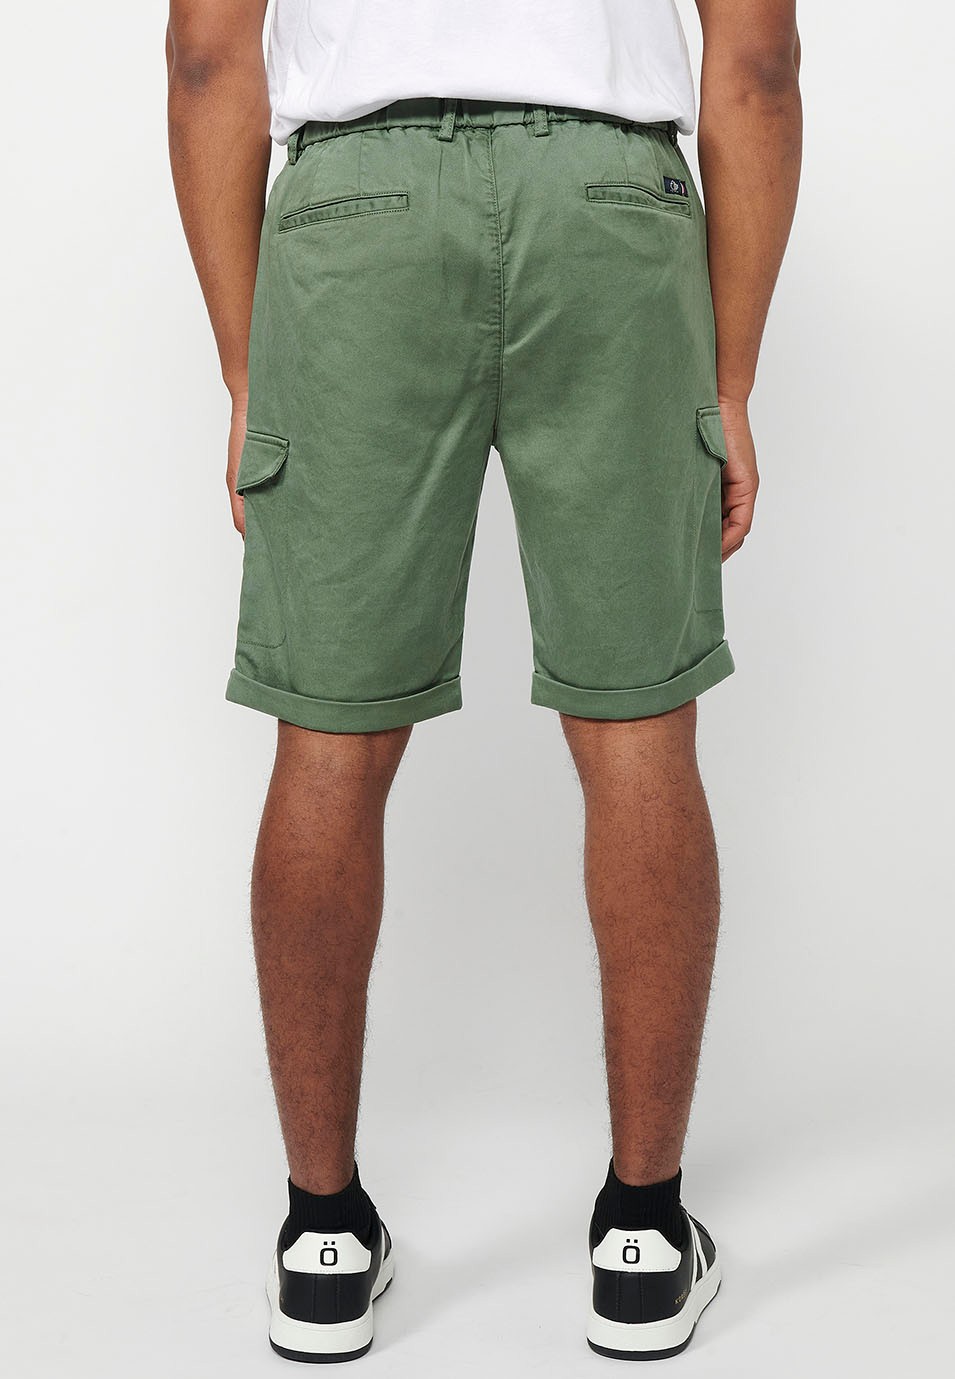 Pantalón corto con Cintura engomada y cierre con cremallera y botón con Bolsillos, dos laterales con solapa de Color Verde para Hombre 2